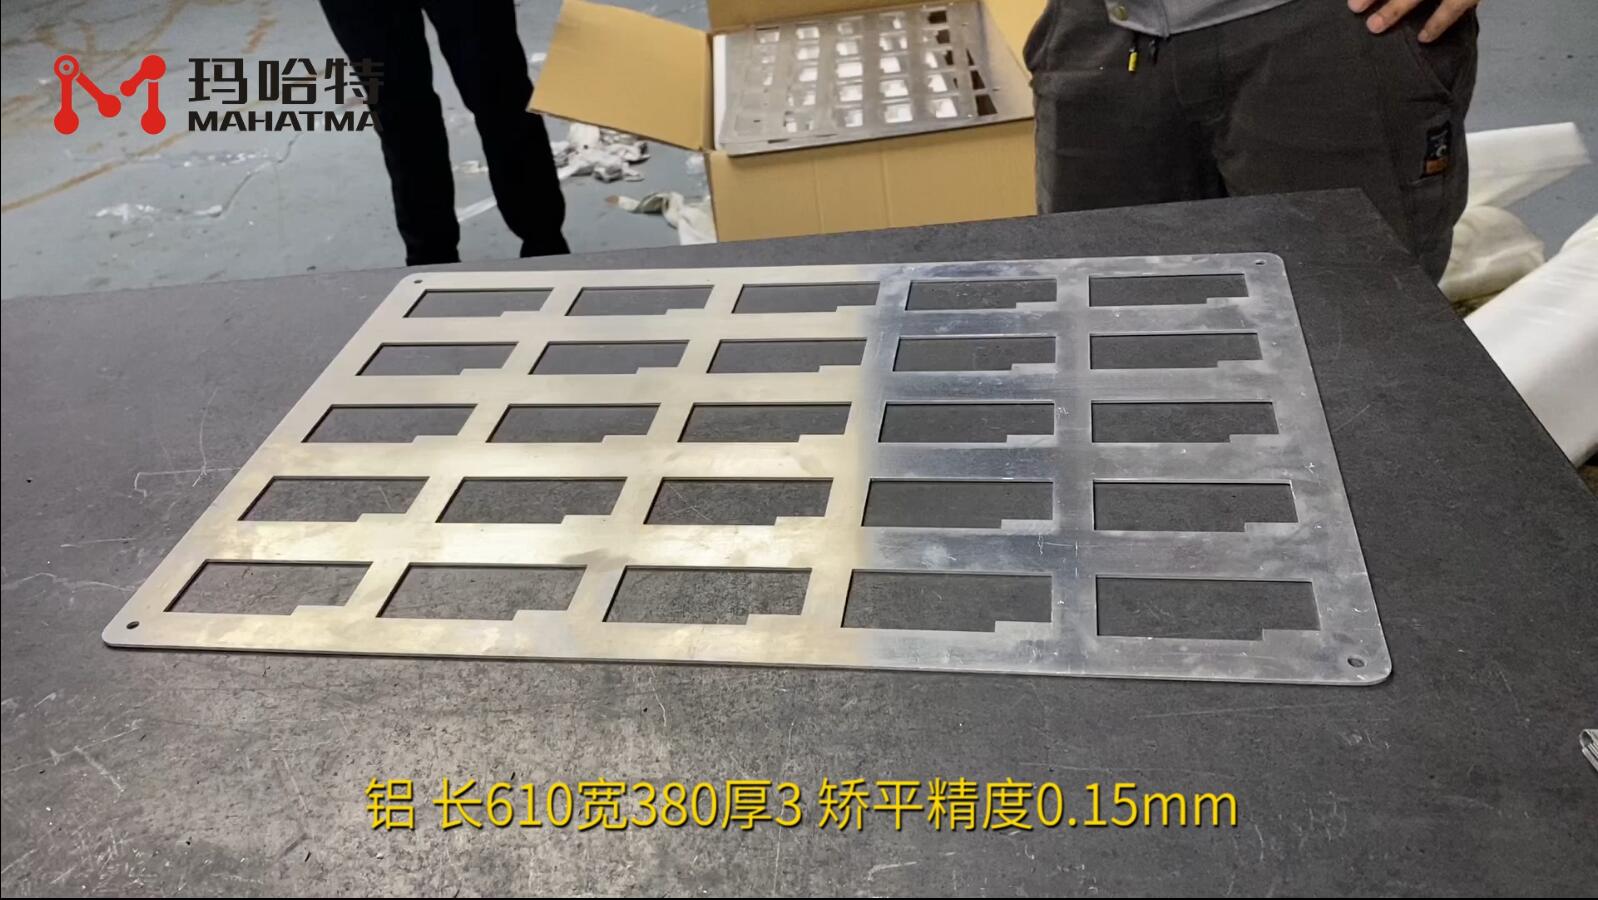 铝 MHT50-1300 长方形  长610宽380厚3 矫平精度0.15mm